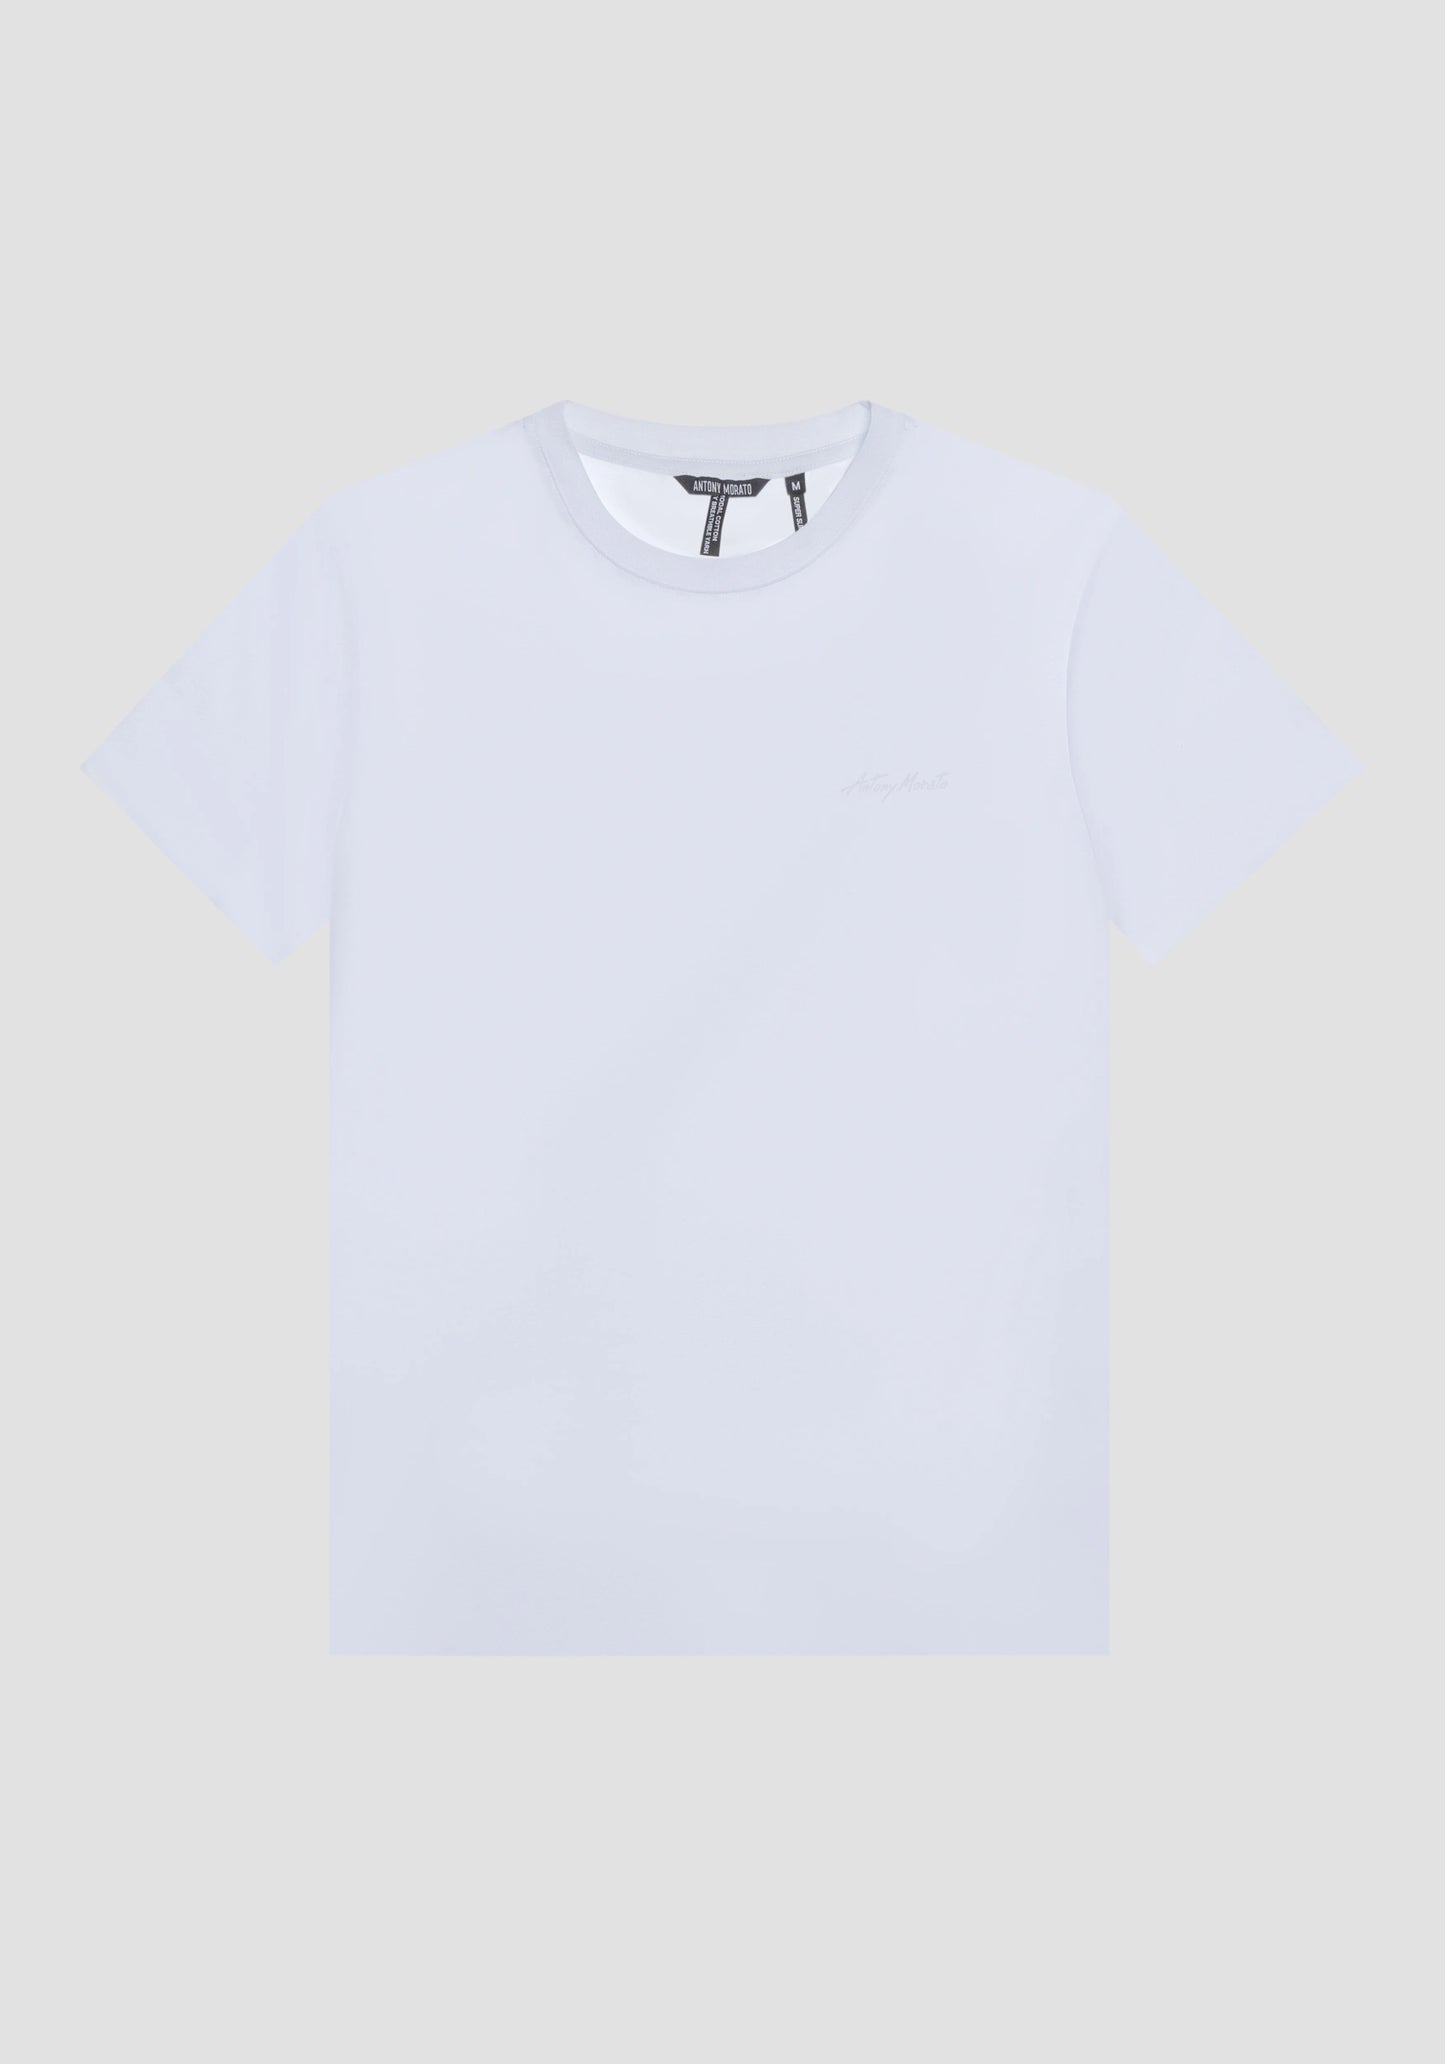 T-shirt super slim fit bianca in cotone elasticizzato con stampa logo